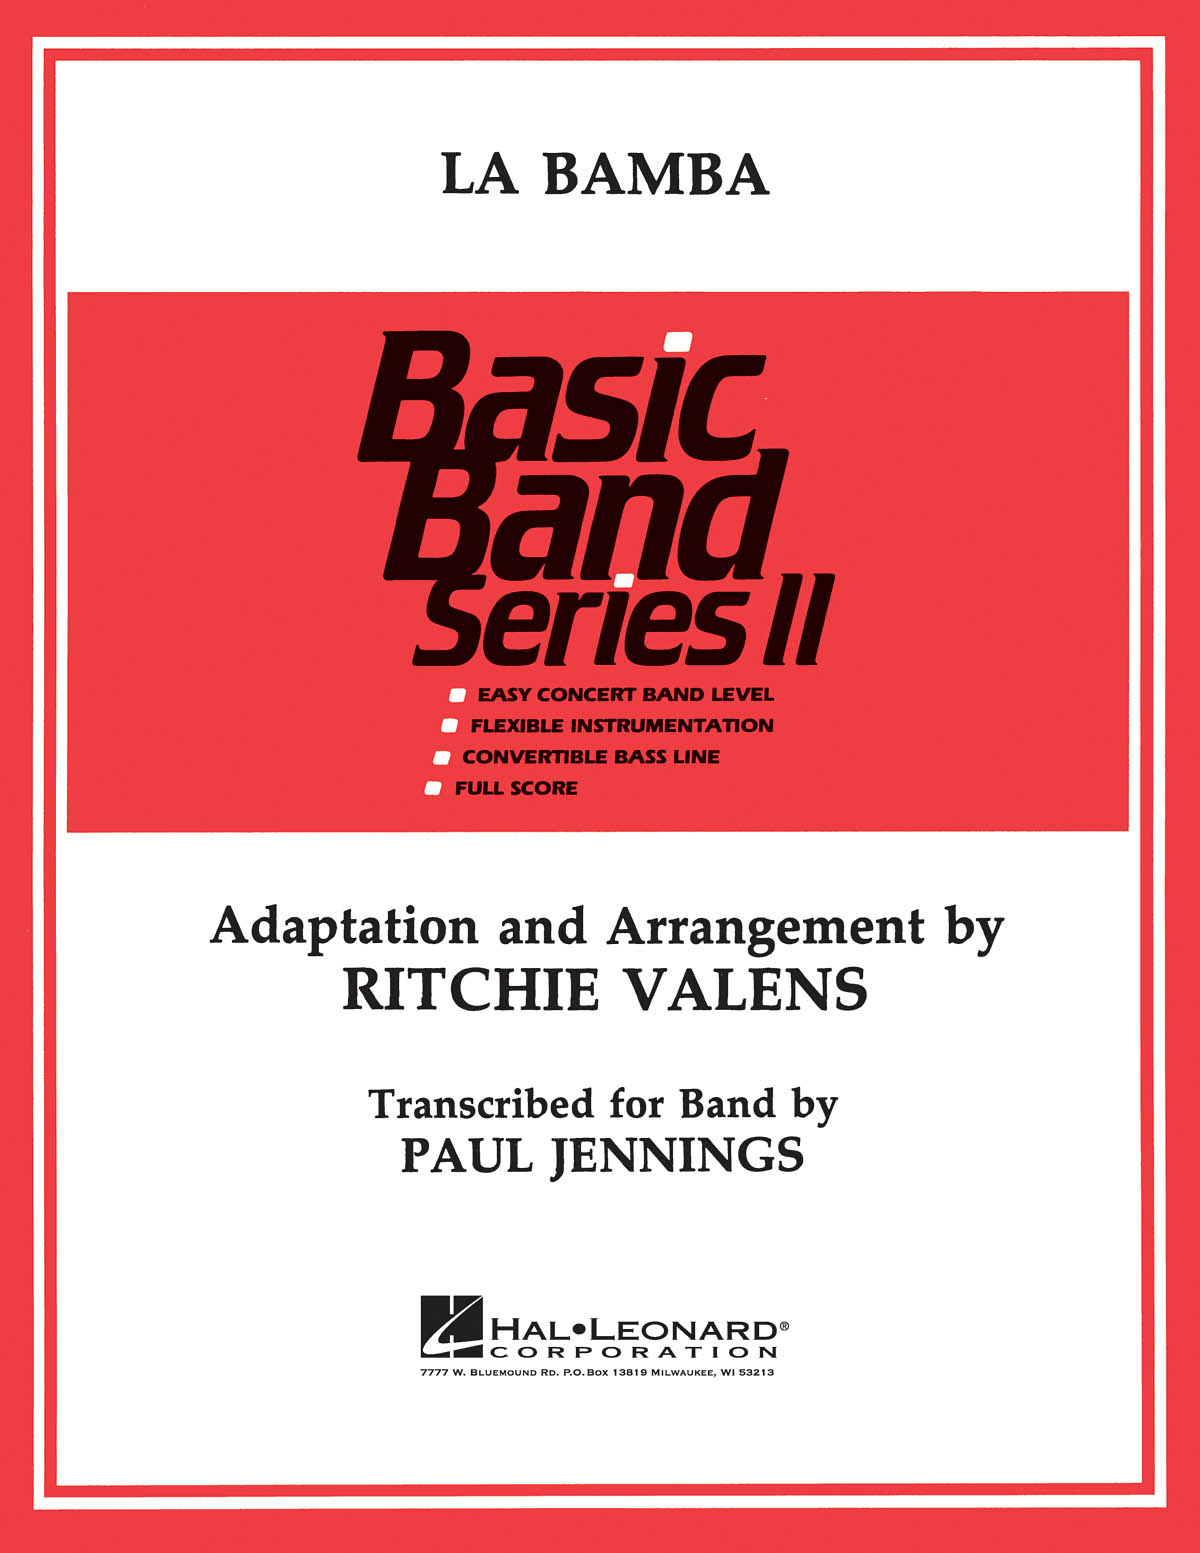 Los Lobos: La Bamba: Concert Band: Score & Parts